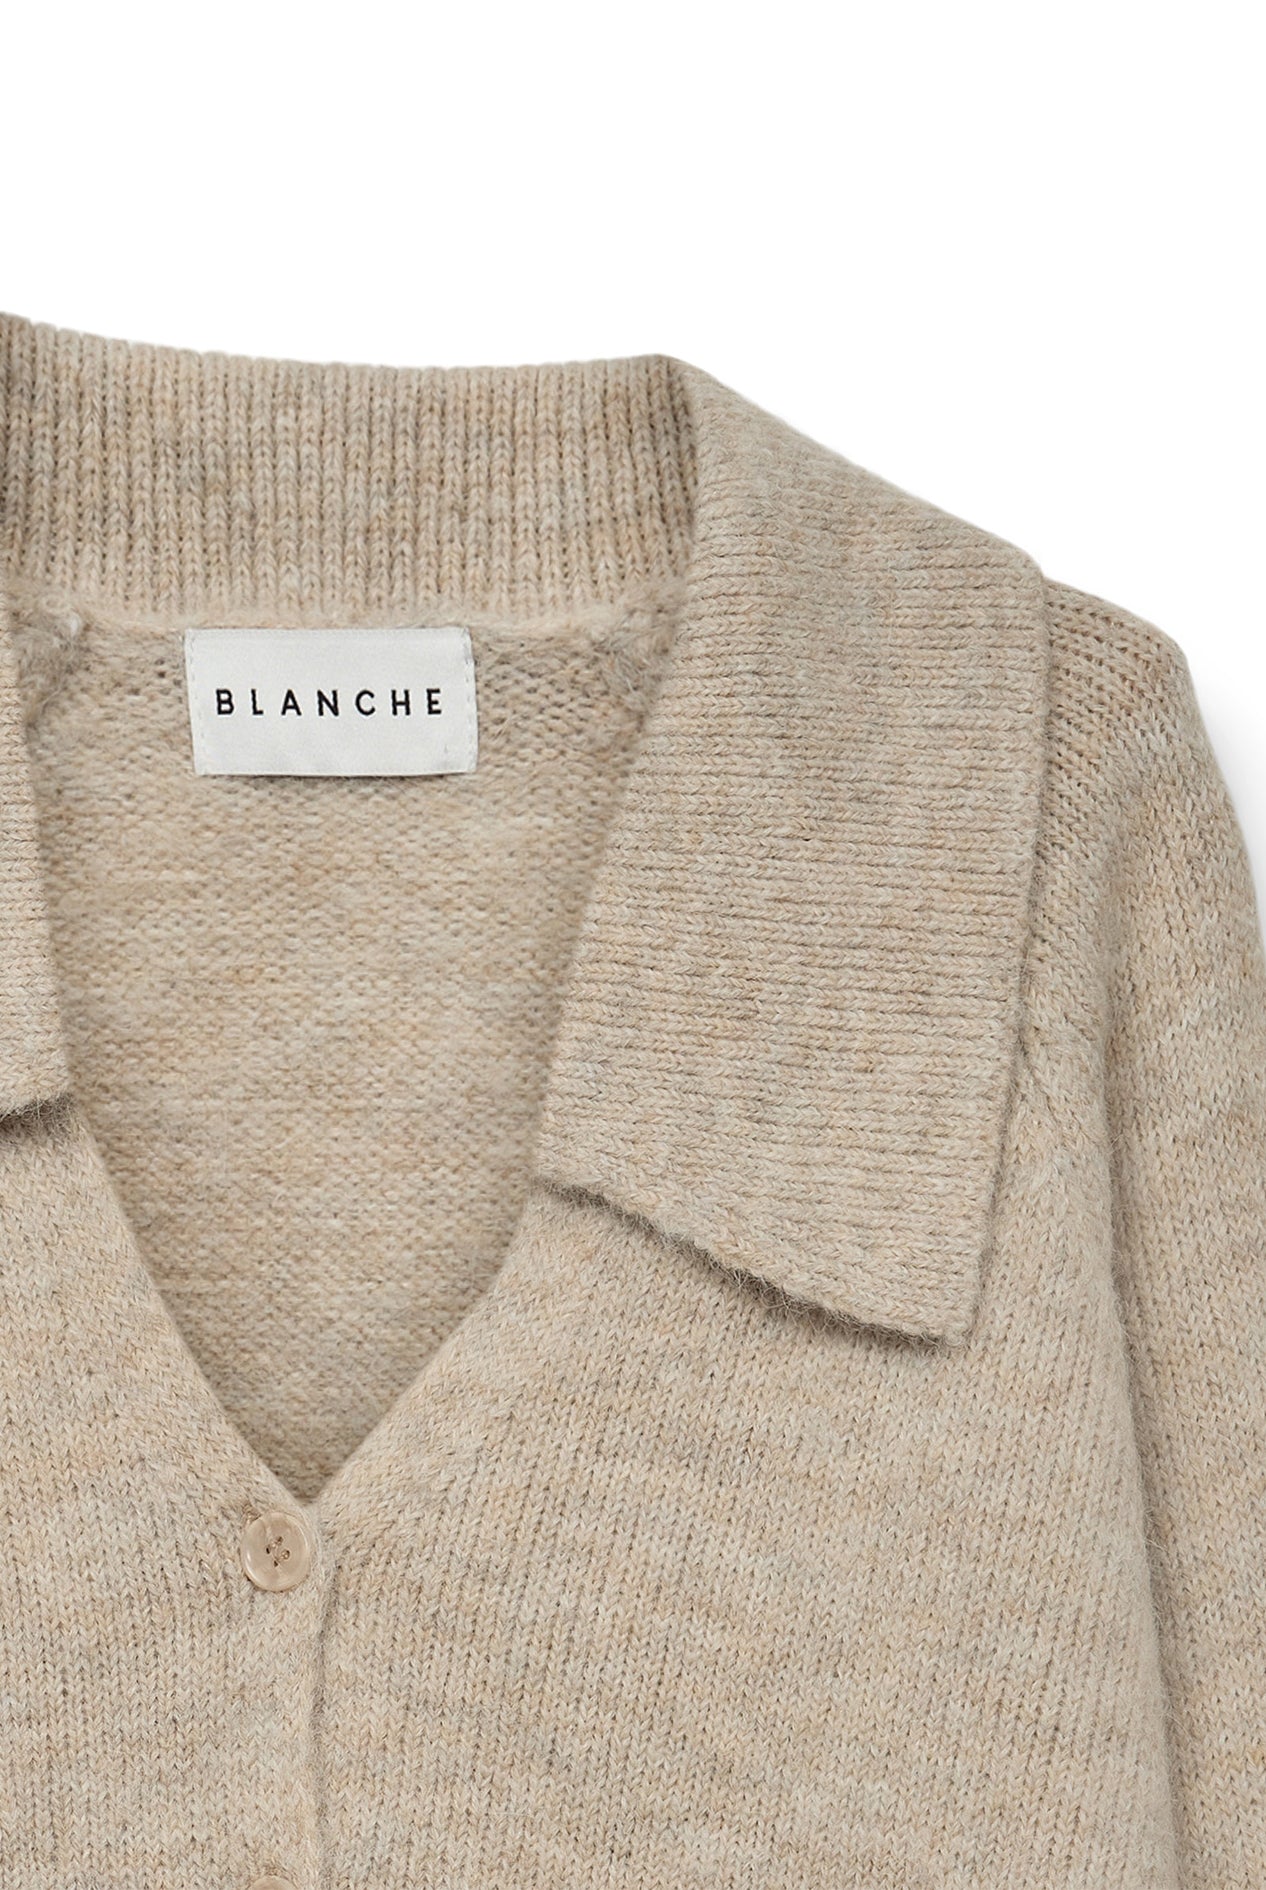 BLANCHE Copenhagen Laurel-BL cardigan Knitwear 1306 Oxford Tan